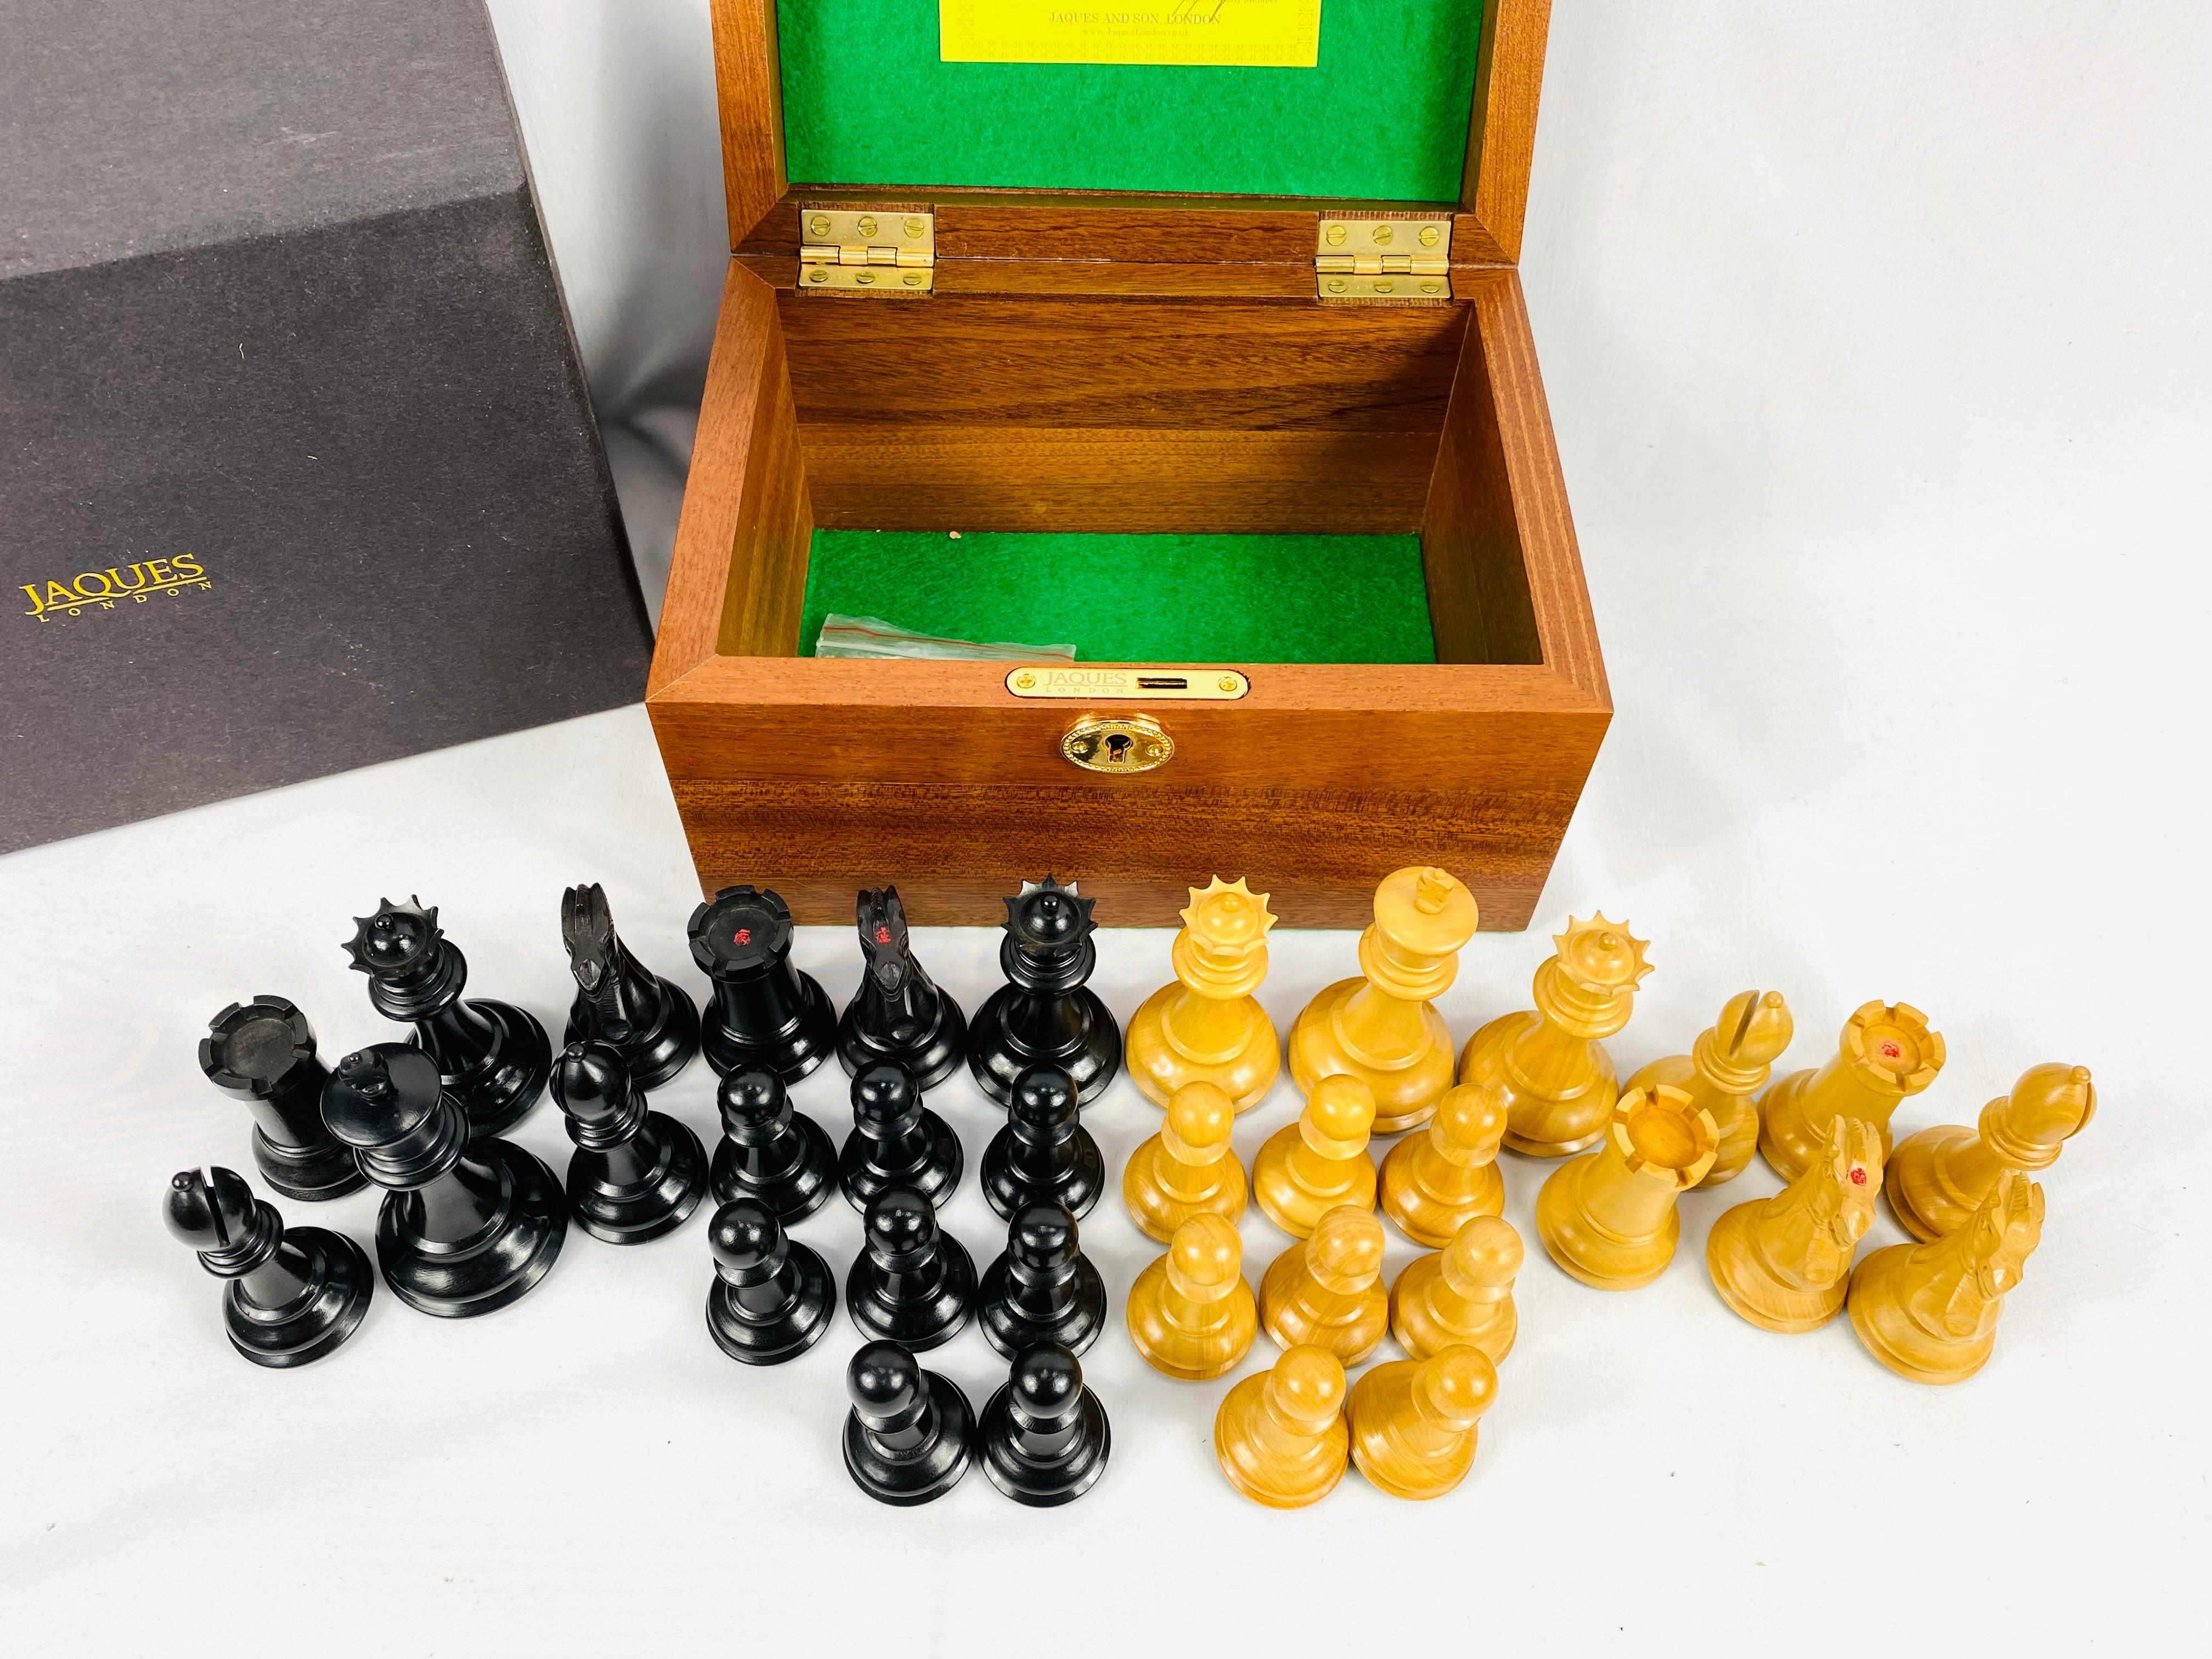 Jaques aus London. Original Staunton Schachspiel in limitierter Auflage, Nr. 035184 (Könige 9cm), in Originalbox mit Schlüssel.
Staunton-Schachfiguren sind heute die gängigsten und bekanntesten Figuren. Die Stücke sind nach dem selbsternannten